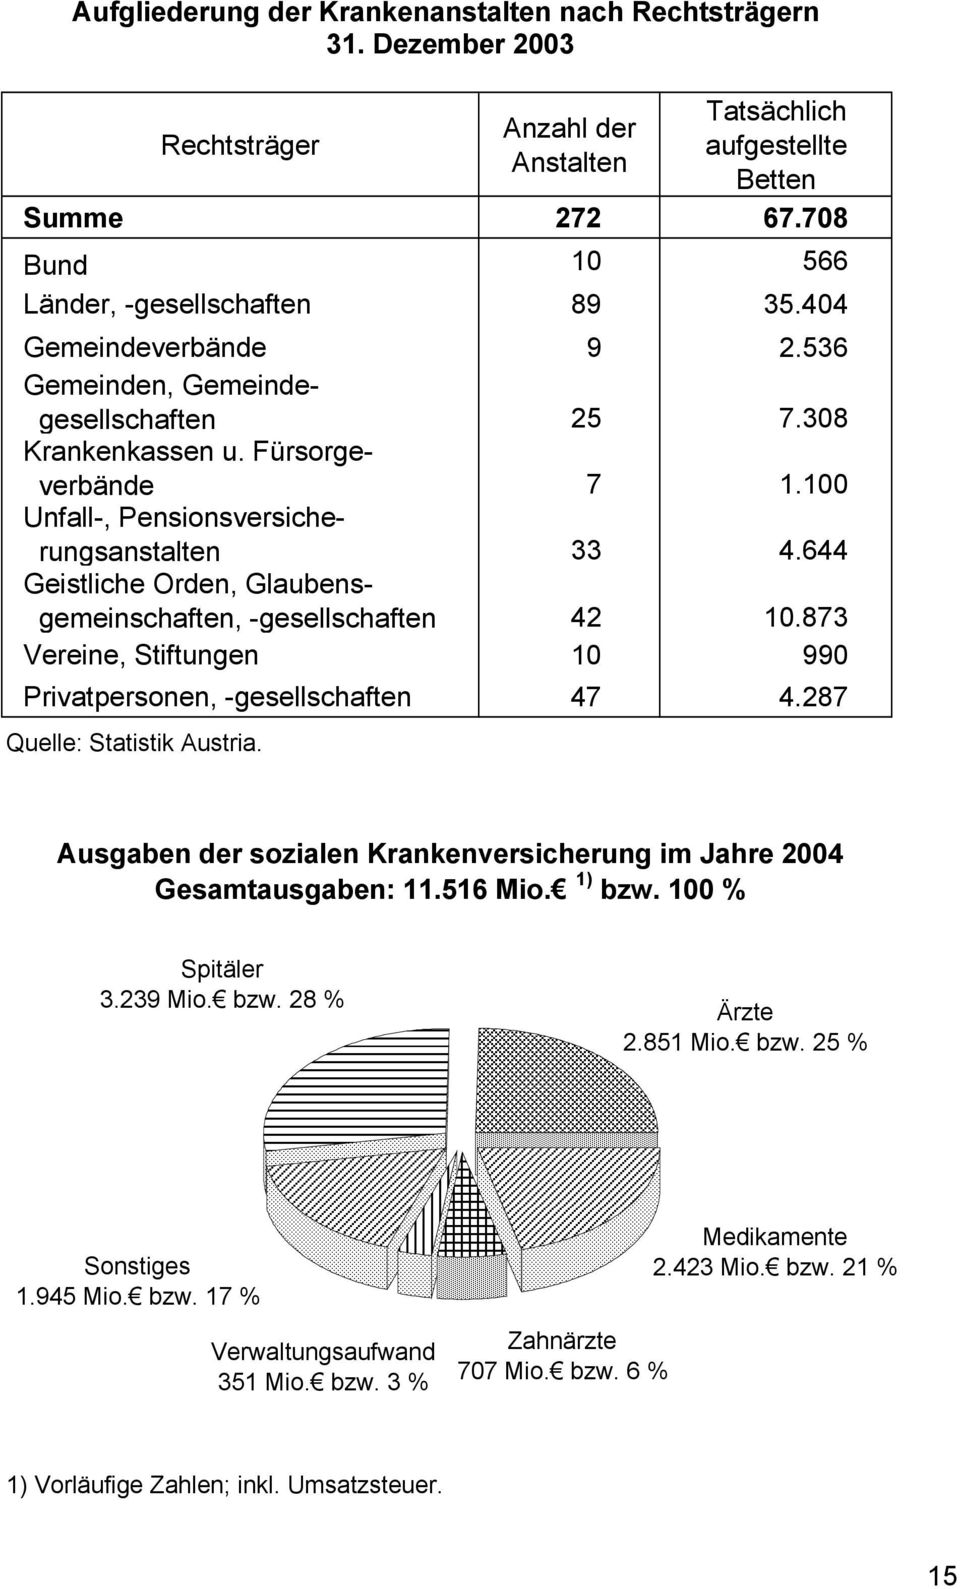 644 Geistliche Orden, Glaubensgemeinschaften, -gesellschaften 42 10.873 Vereine, Stiftungen 10 990 Privatpersonen, -gesellschaften 47 4.287 Quelle: Statistik Austria.